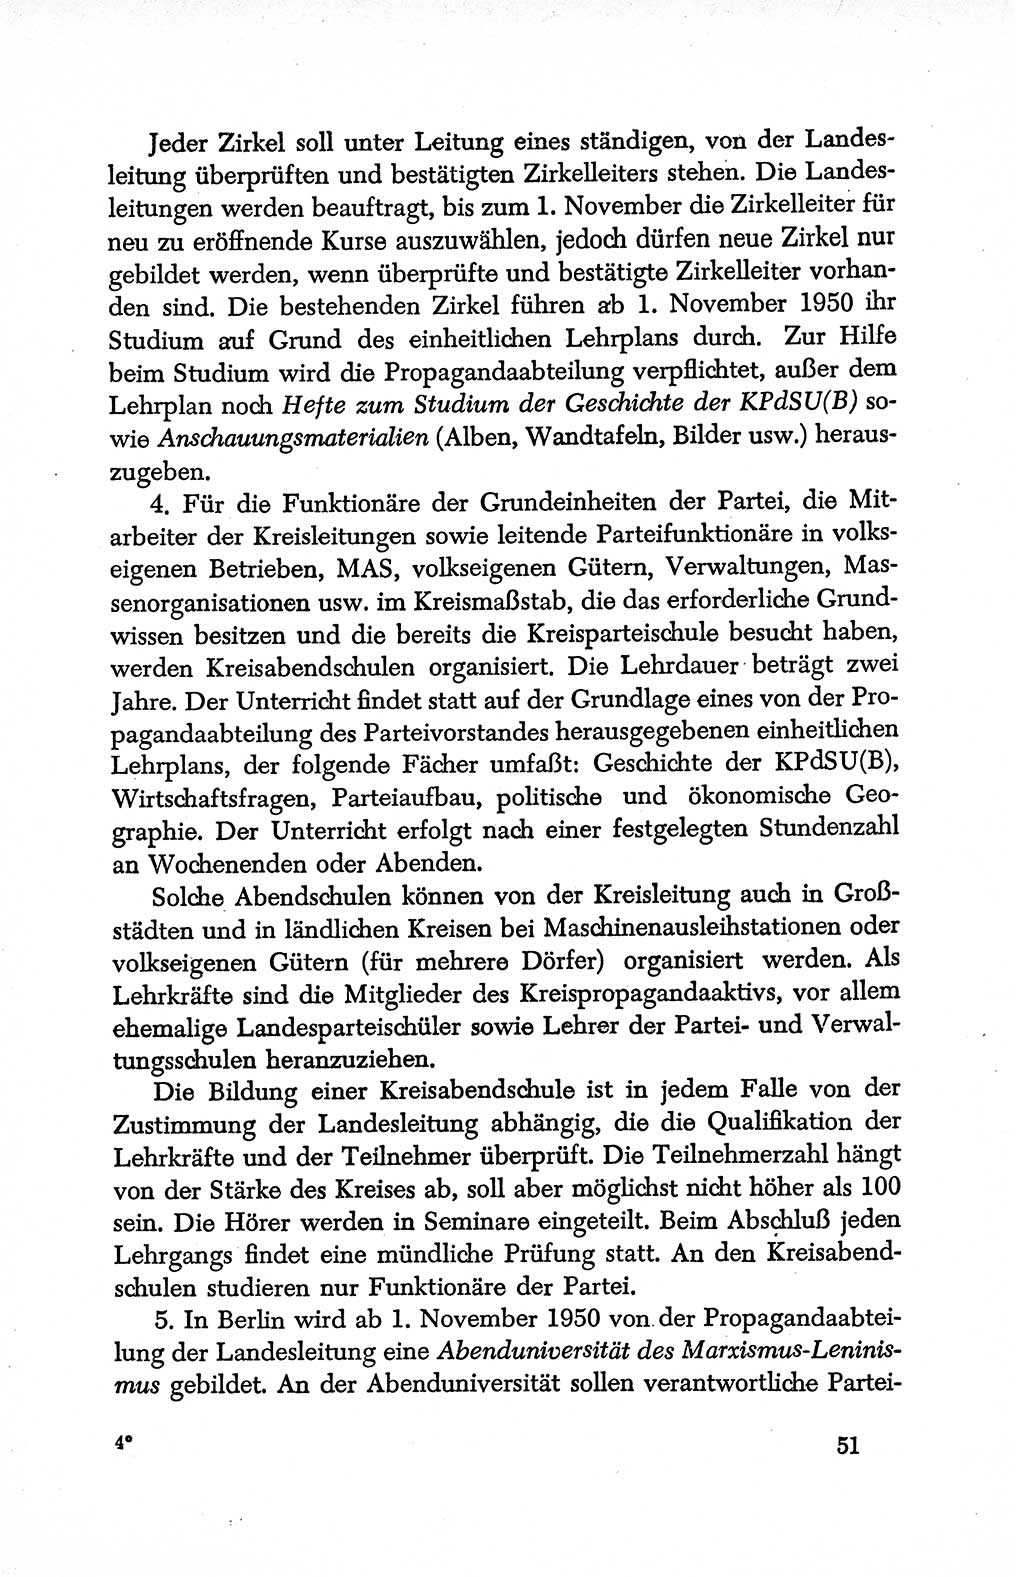 Dokumente der Sozialistischen Einheitspartei Deutschlands (SED) [Deutsche Demokratische Republik (DDR)] 1950-1952, Seite 51 (Dok. SED DDR 1950-1952, S. 51)